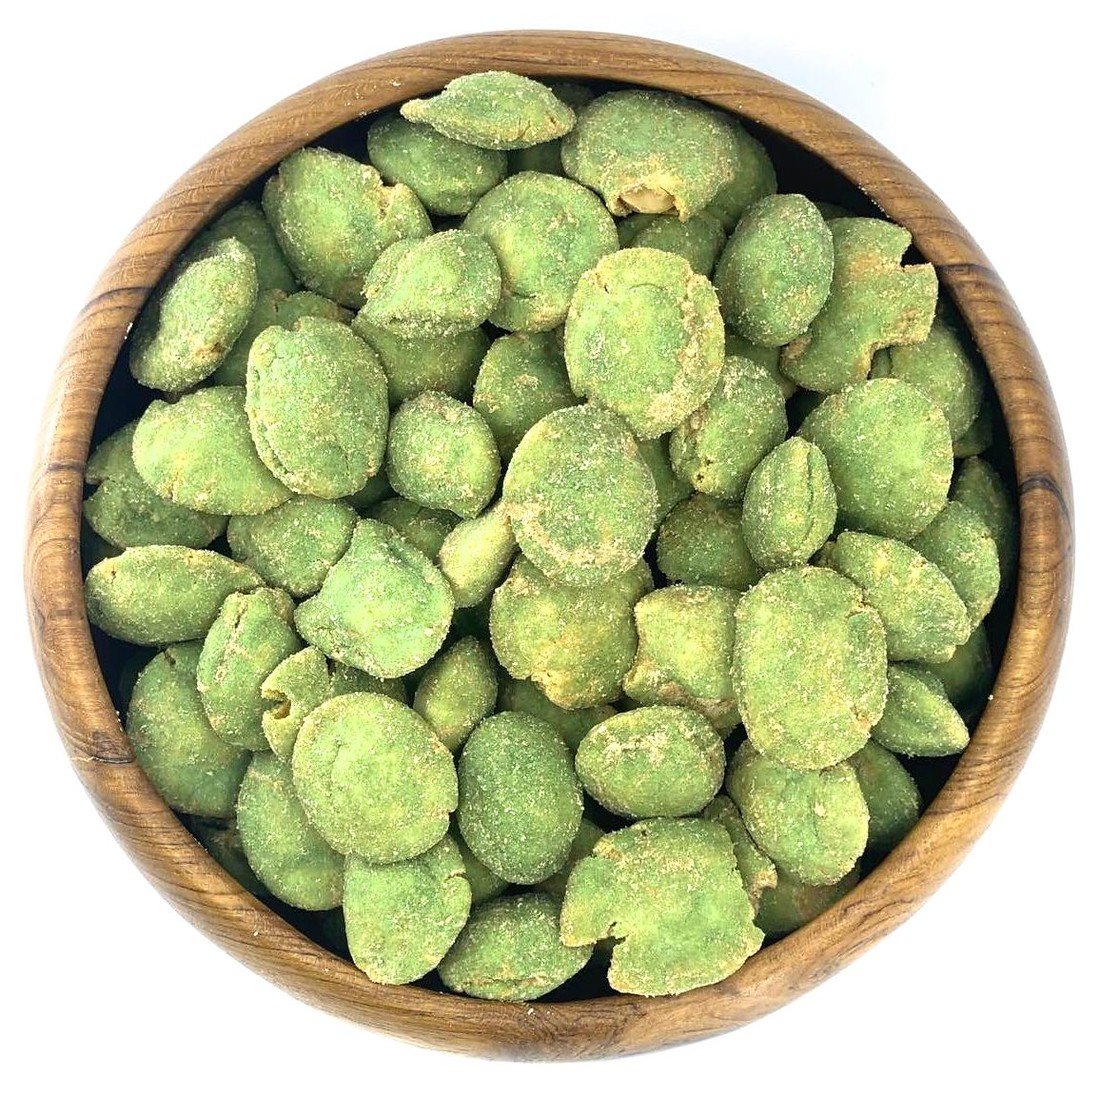 Zdravoslav Arašídy ve wasabi - zelené 500 g